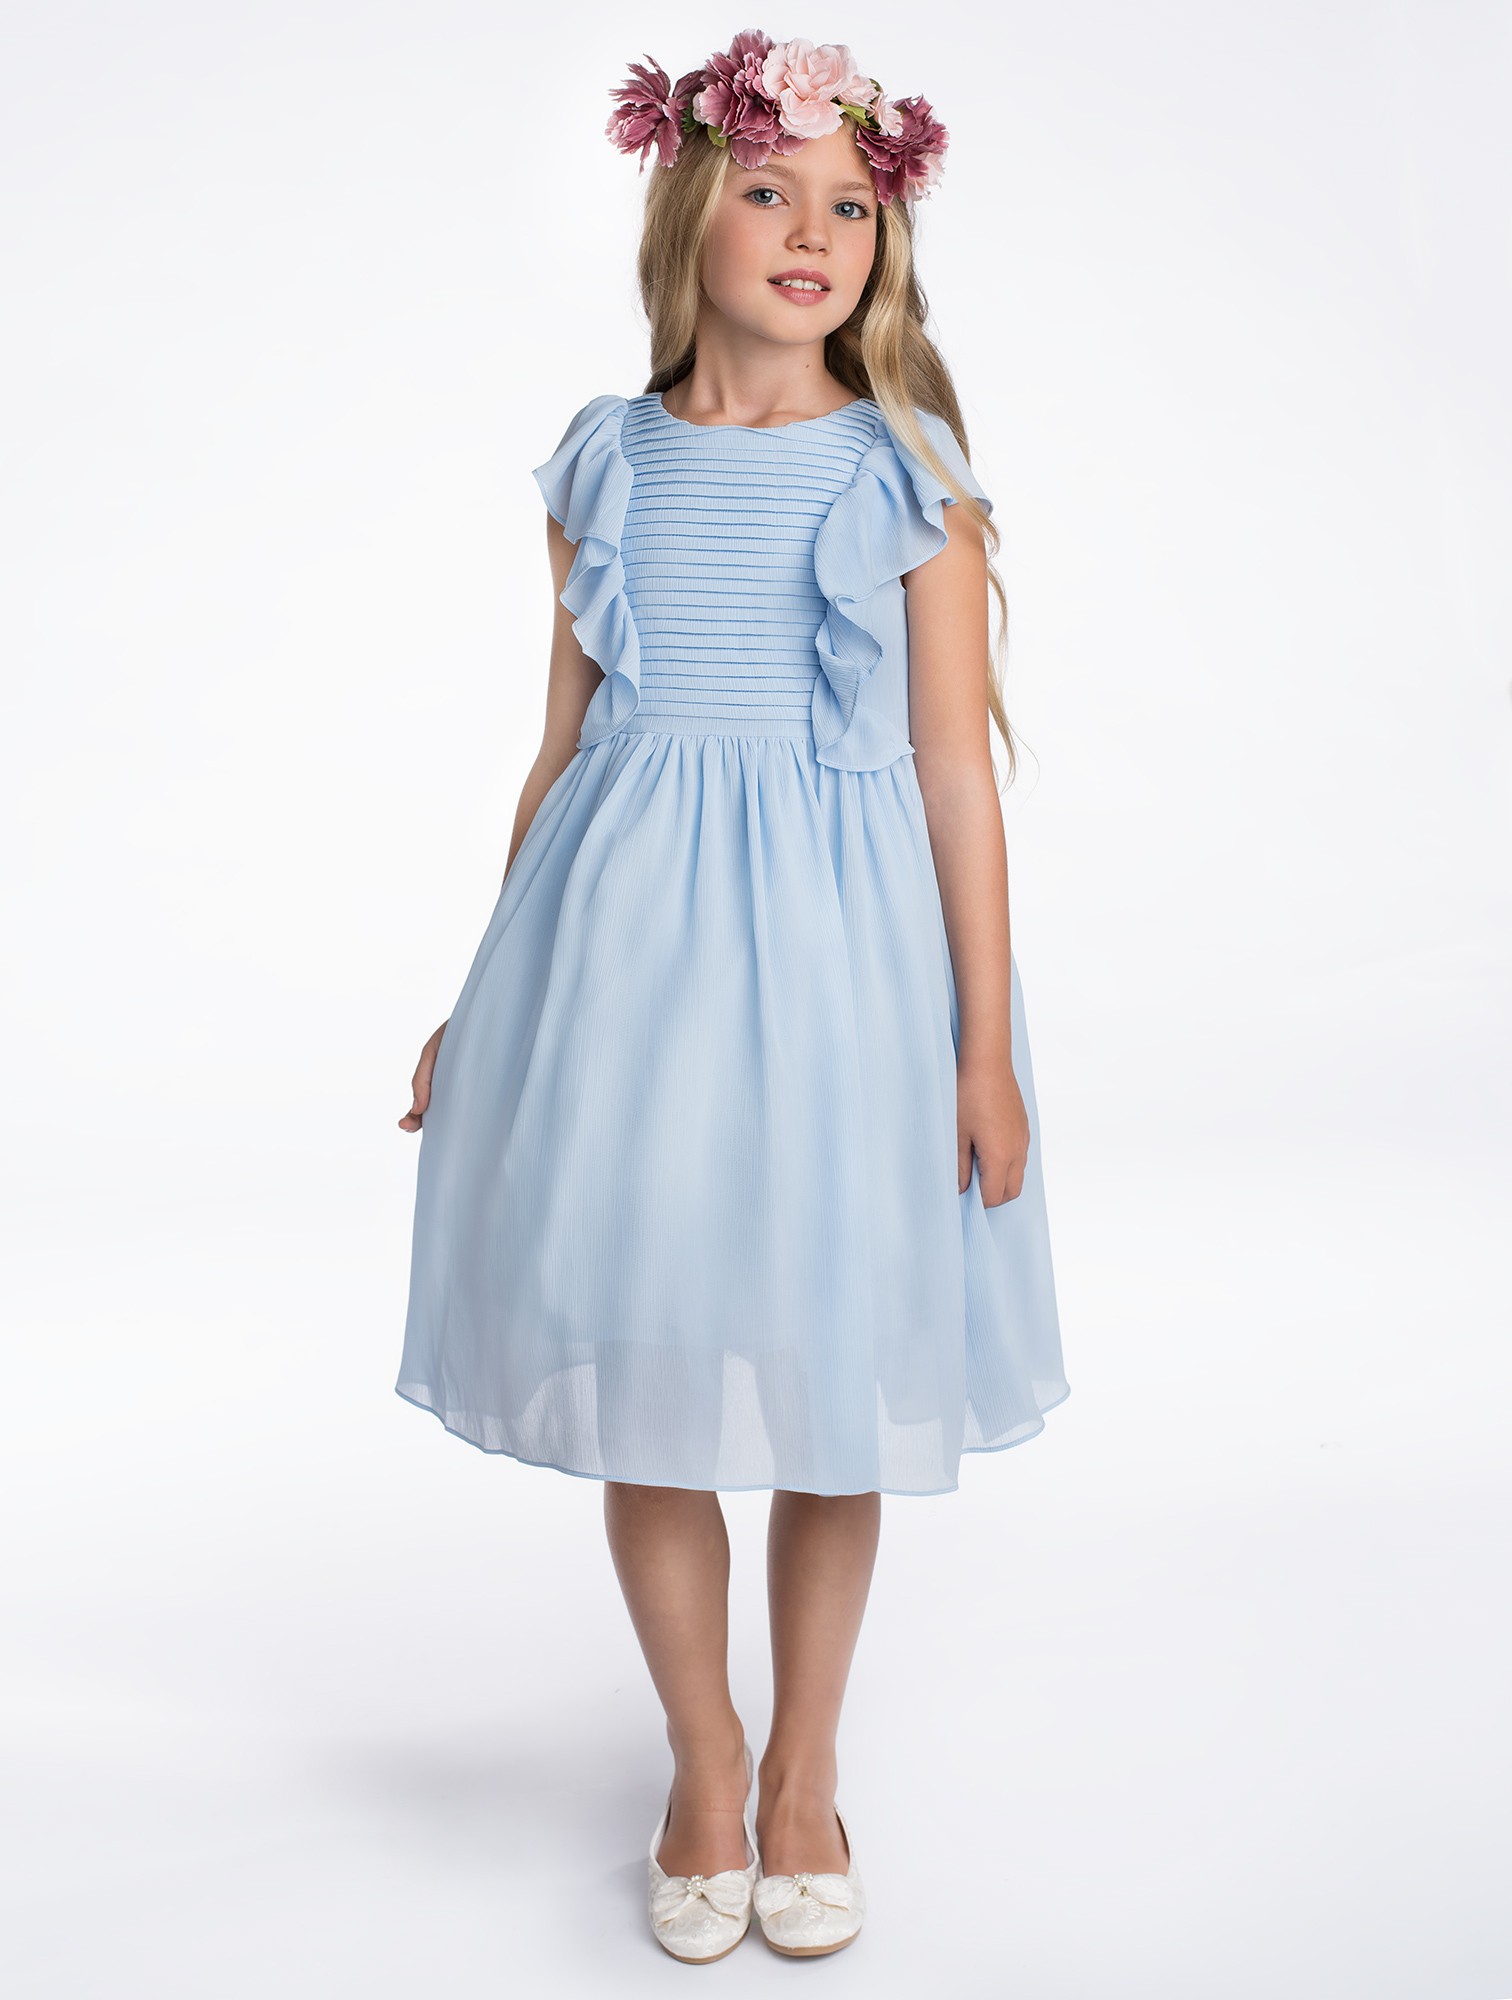 Dívčí šaty Elsa modré 7-8 let